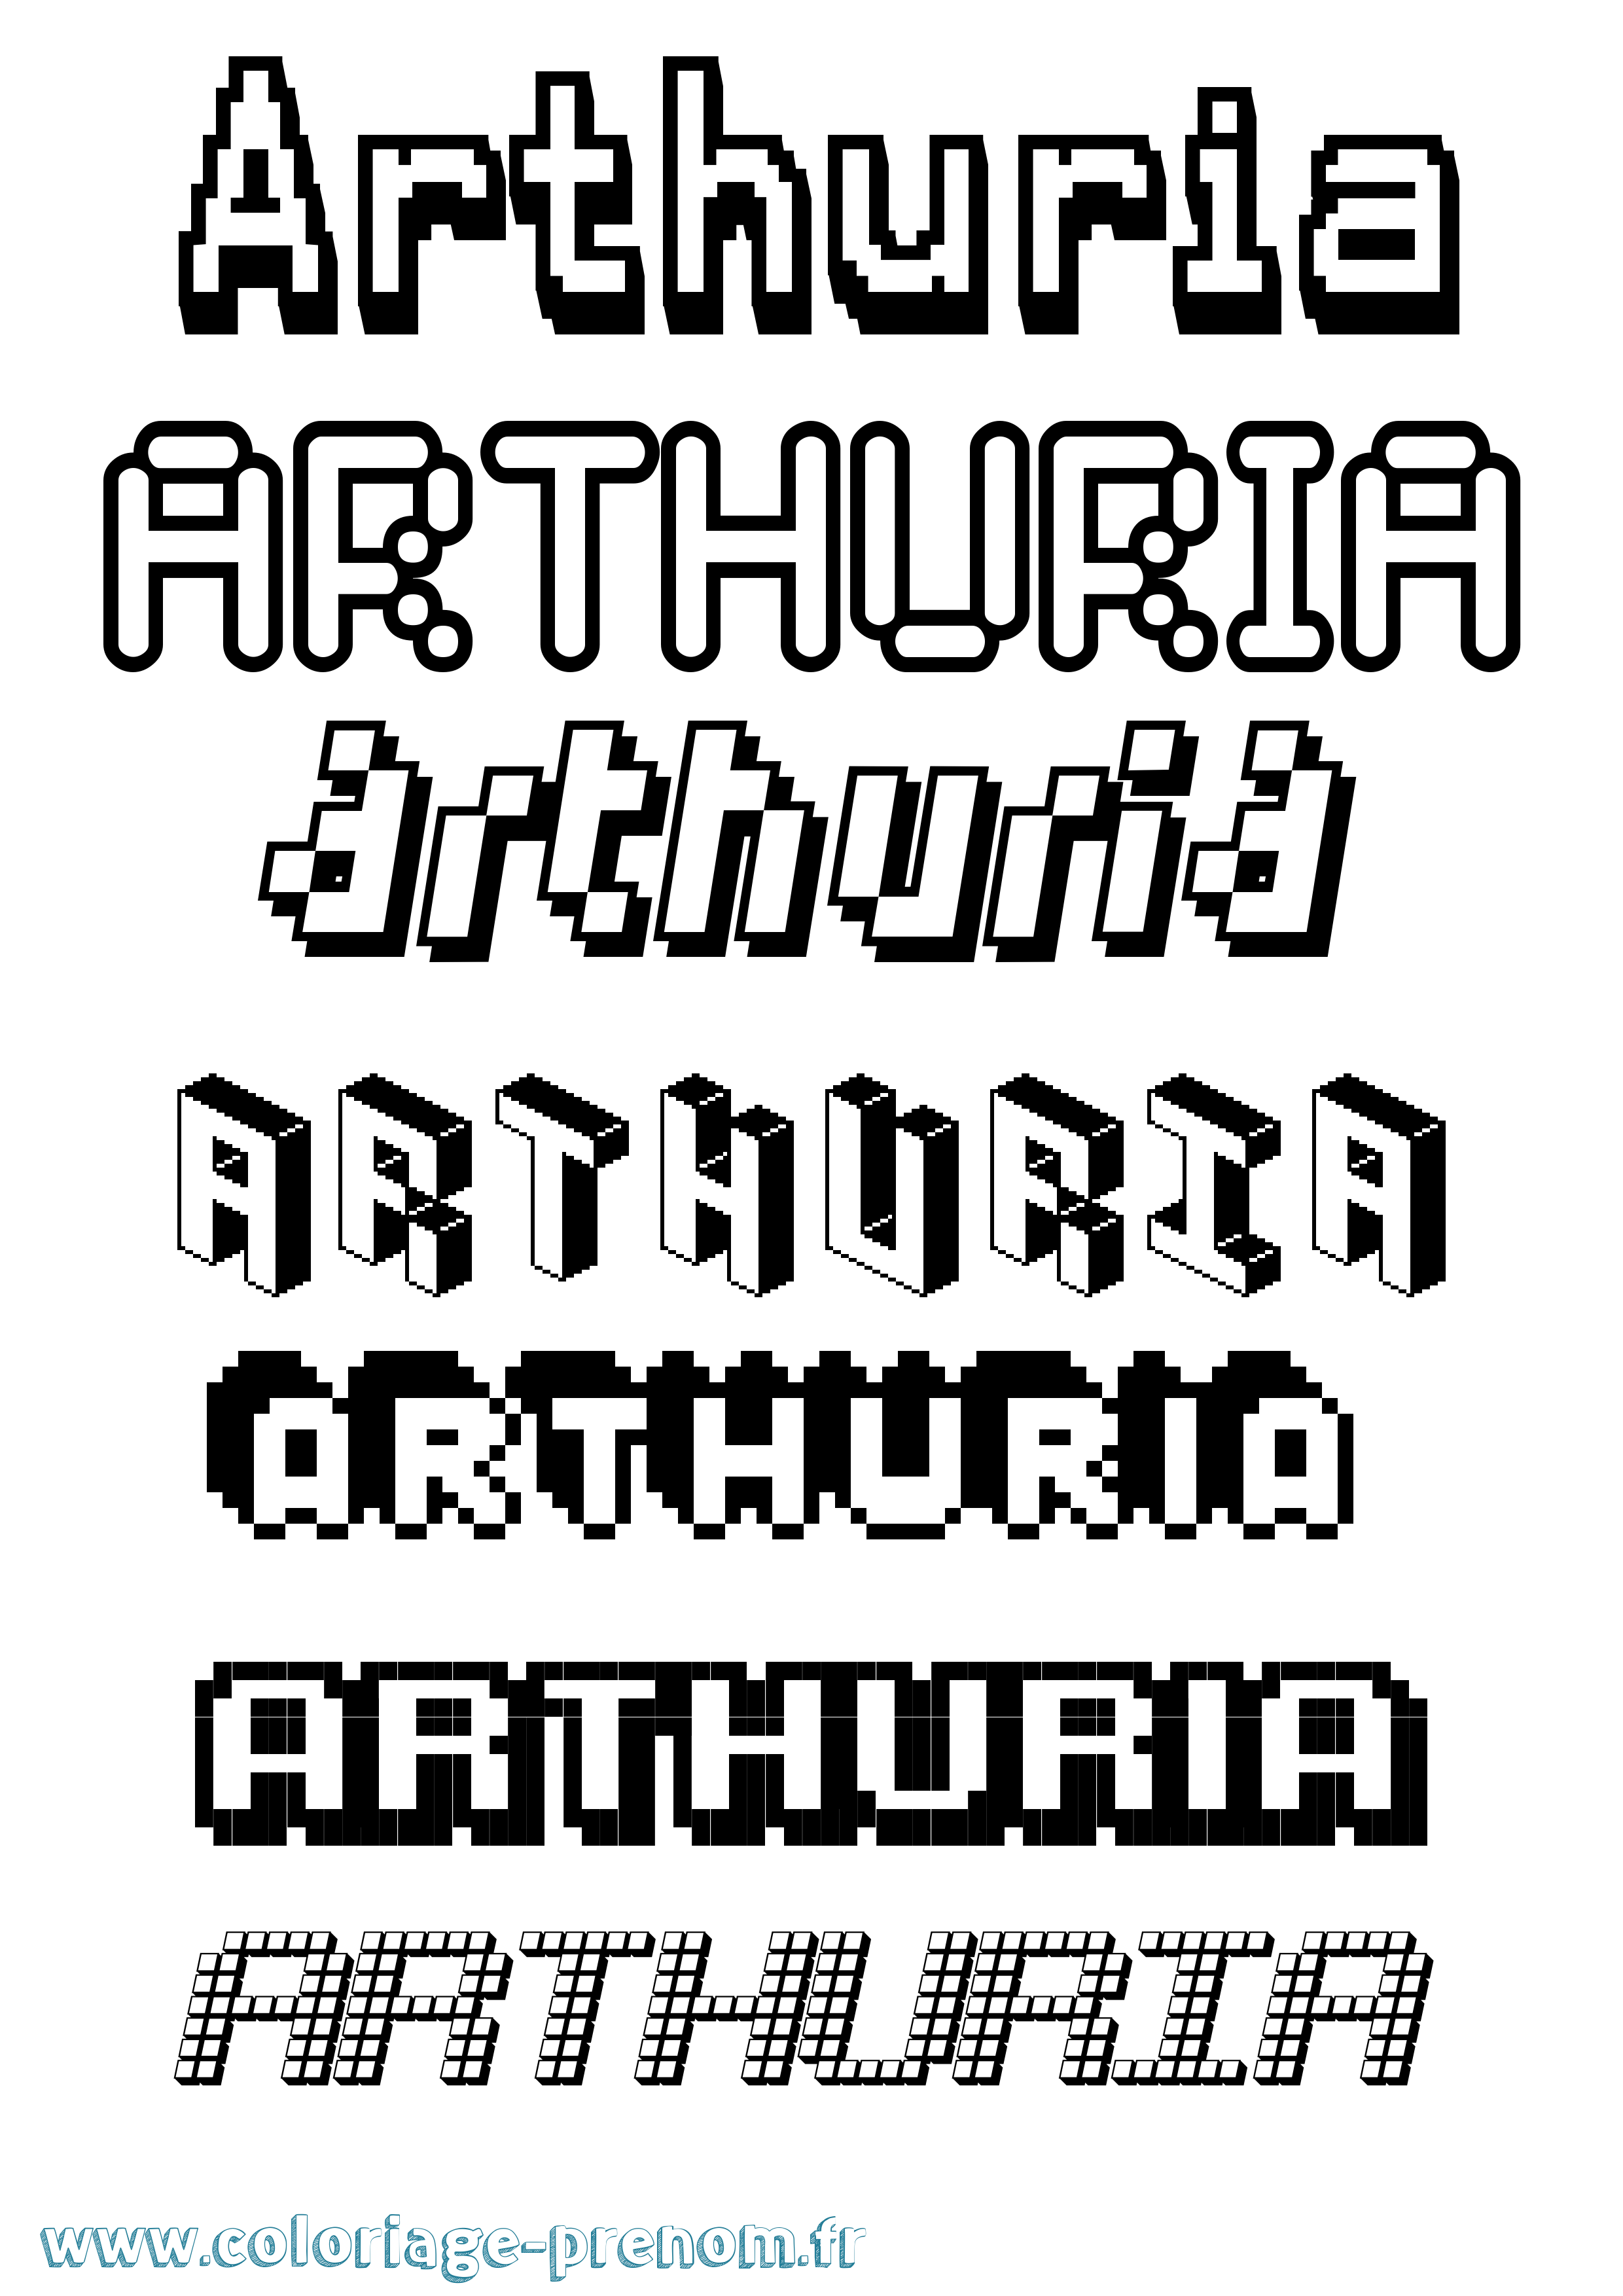 Coloriage prénom Arthuria Pixel